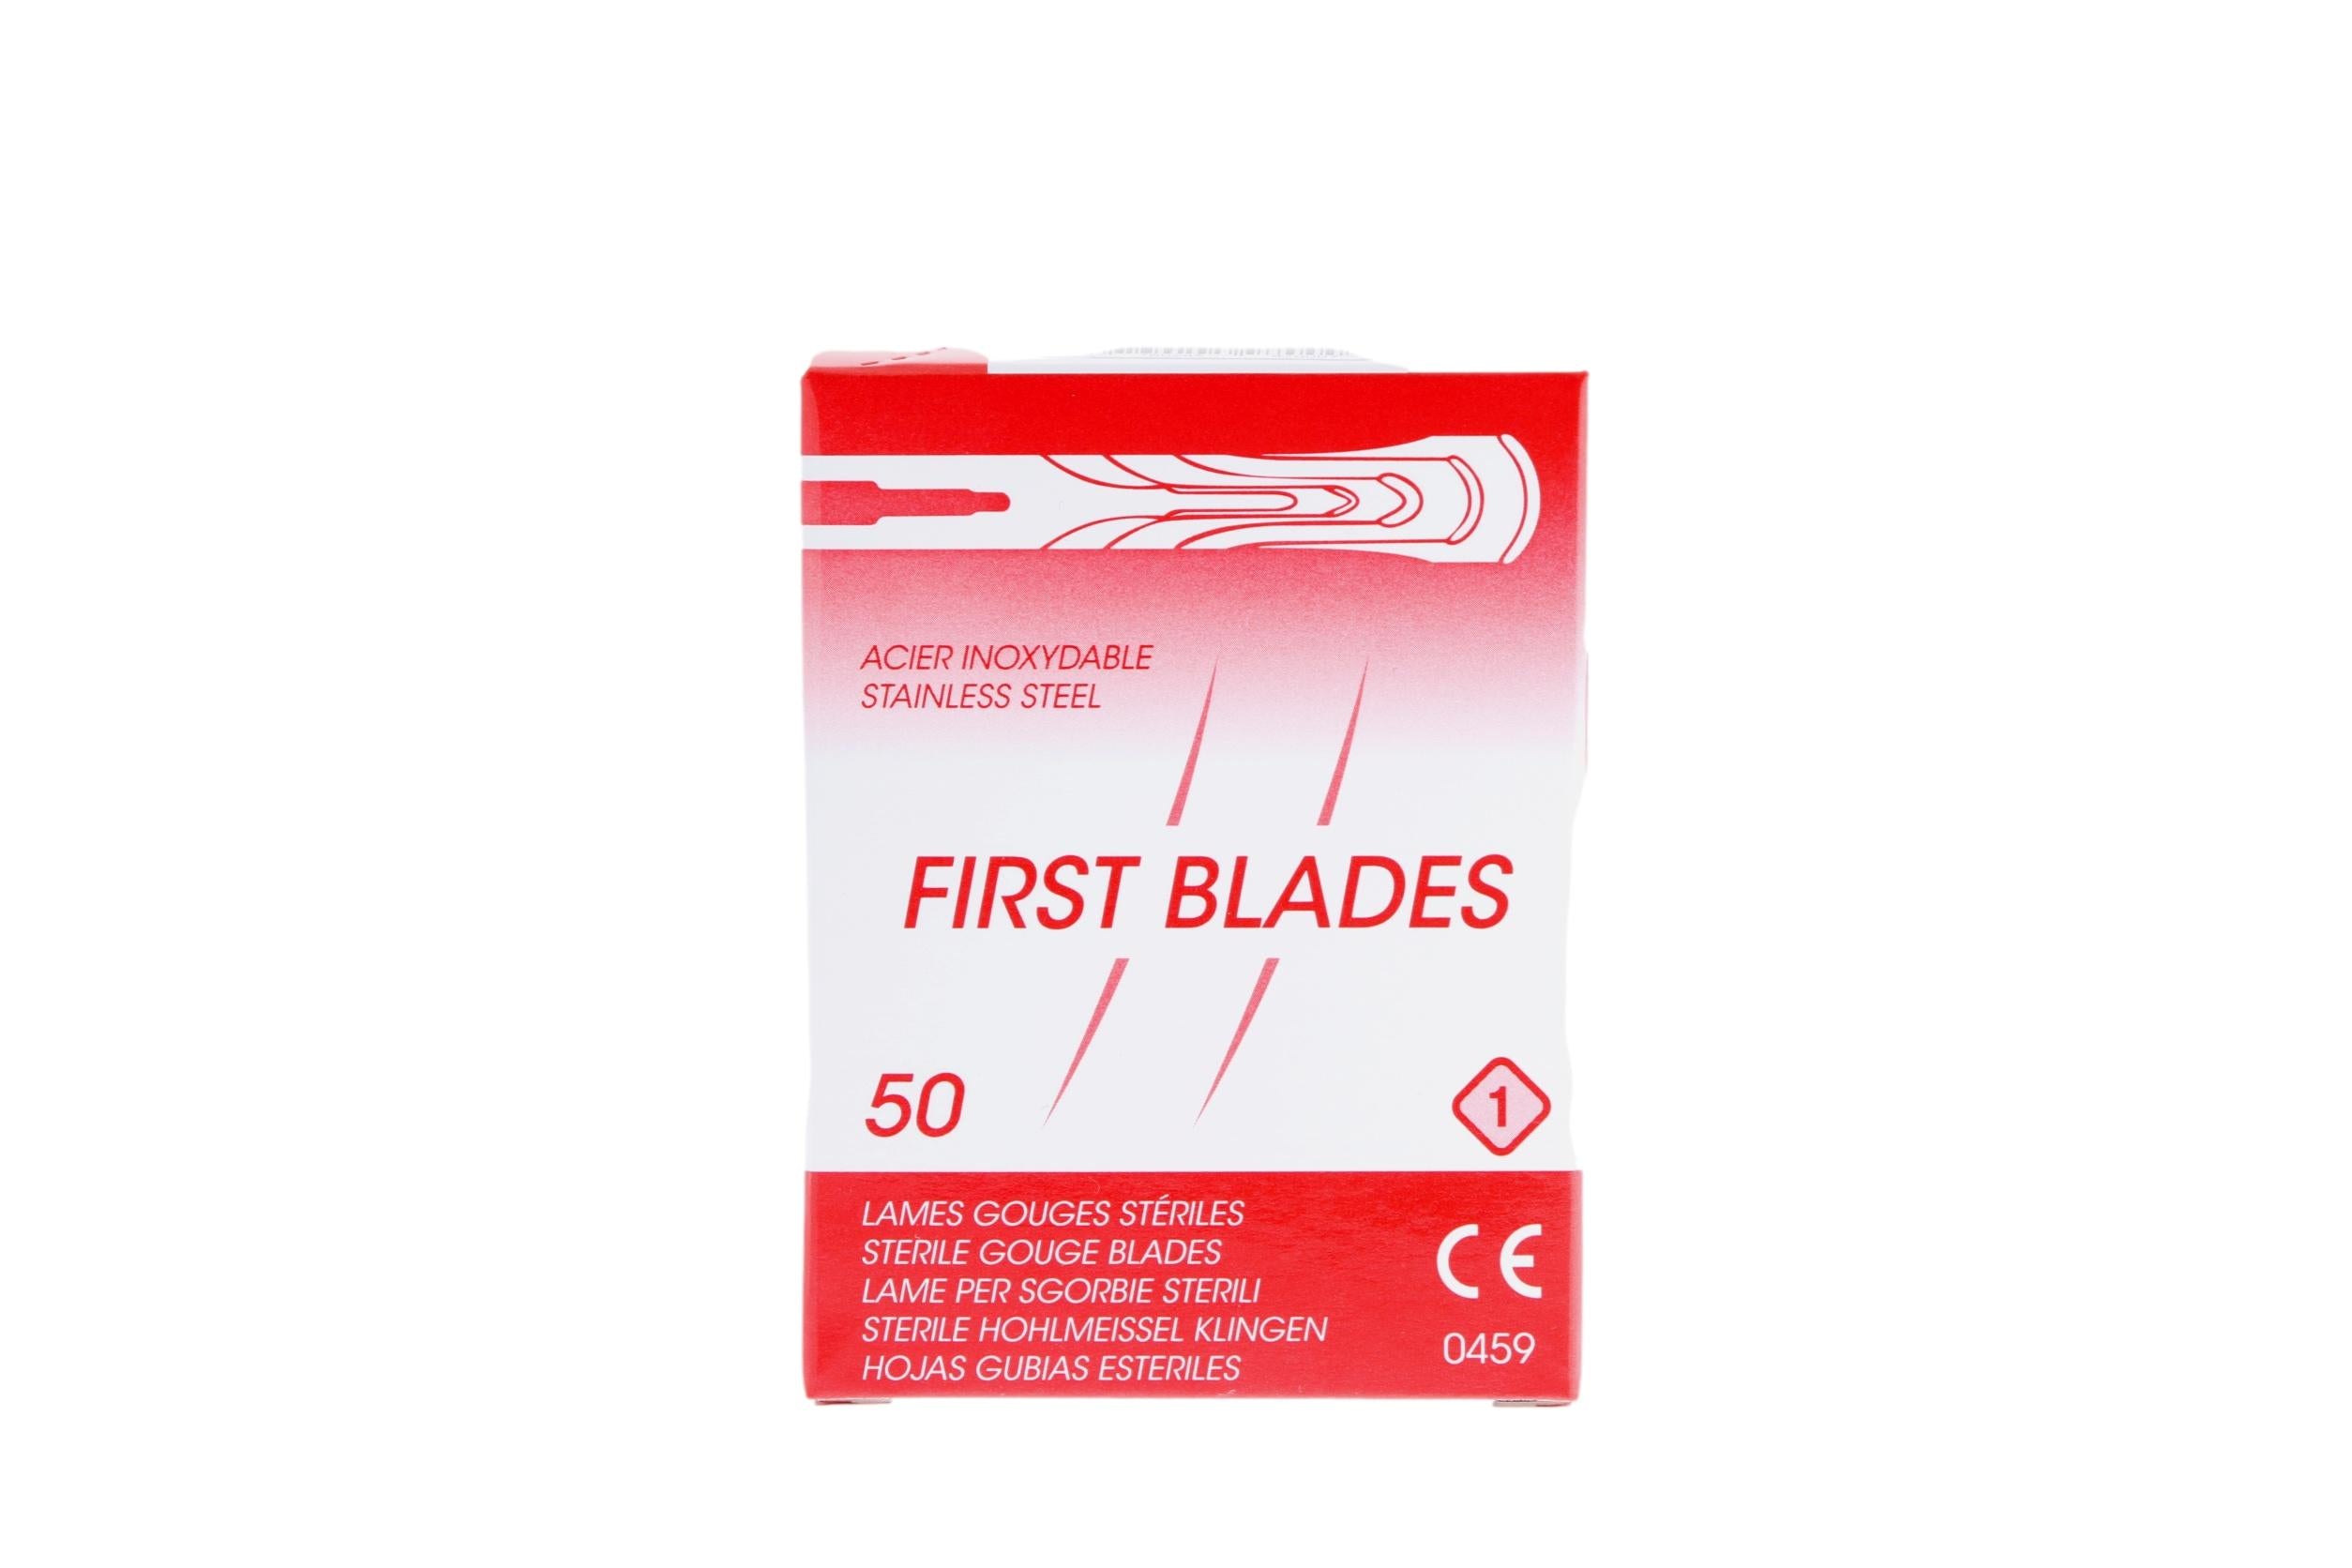 50 lames de gouges stériles - First Blades